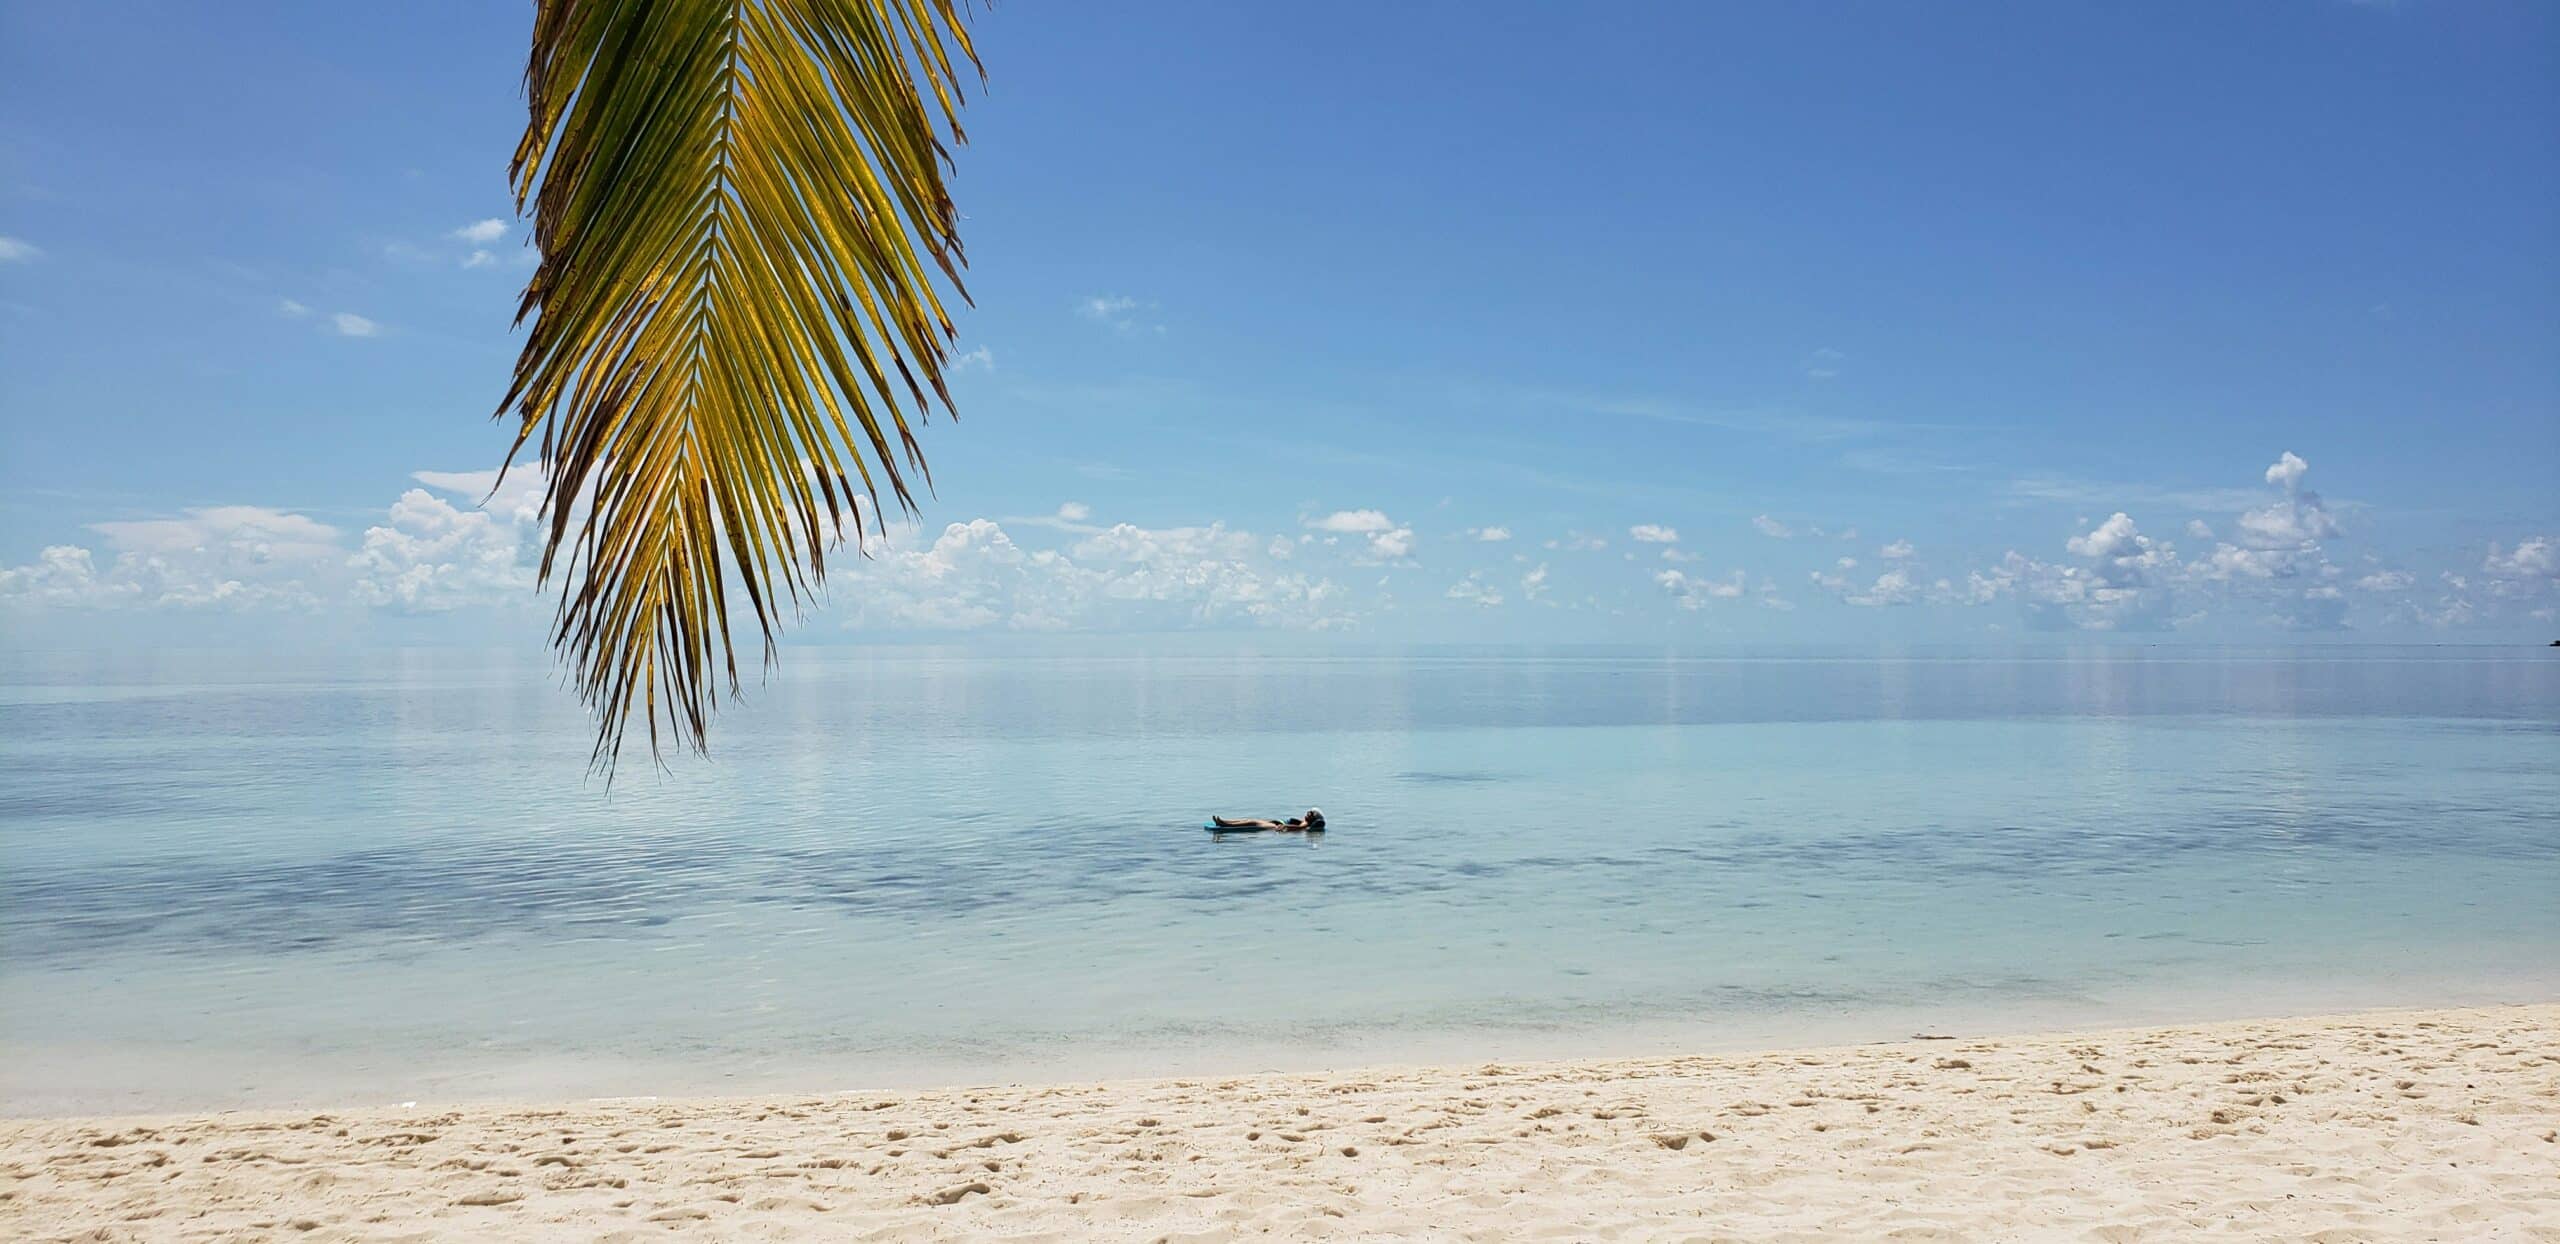 Eine ruhige Strandszene mit klarem blauen Himmel und ruhigem, türkisfarbenem Wasser. Ein einzelner Palmenzweig hängt in der oberen linken Ecke und eine Person schwimmt auf dem Rücken im ruhigen Wasser nahe dem Horizont. In der Nähe gleitet anmutig ein eleganter Katamaran aus einem Segelurlaub dahin. Weicher weißer Sand bedeckt den Strand im Vordergrund.